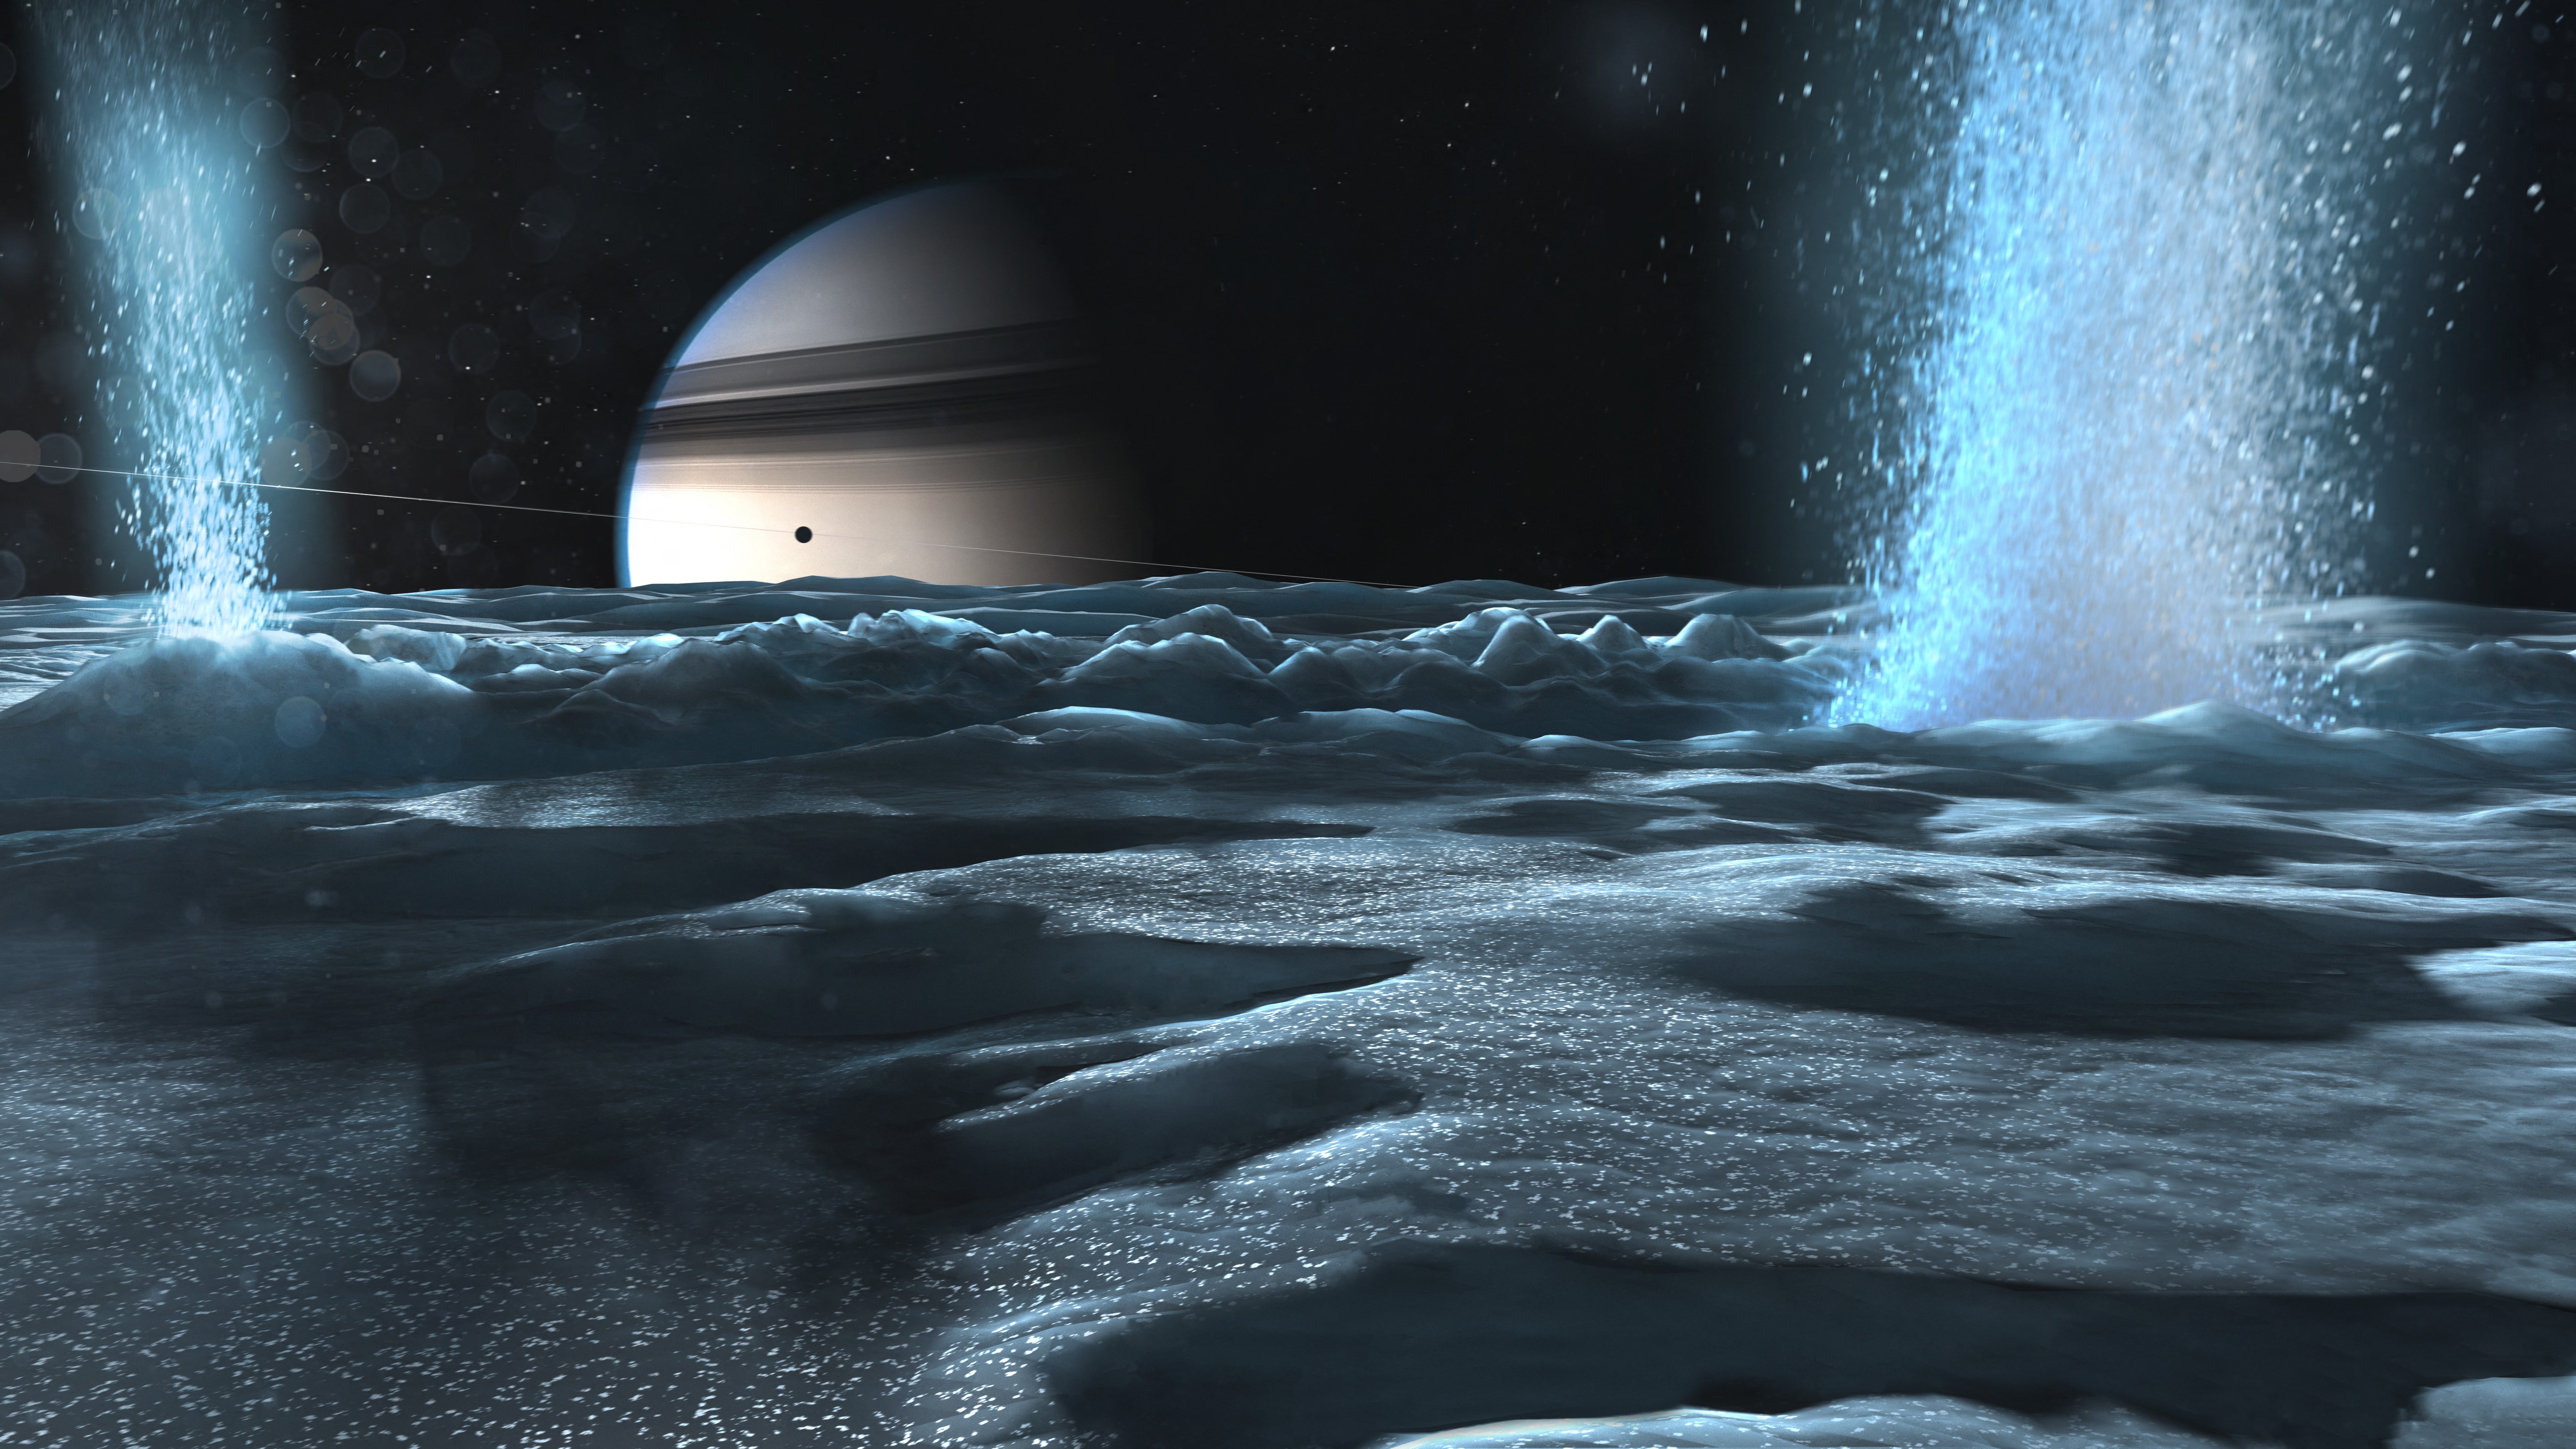 Nagy valószínűséggel biológiai életre utal az Enceladus óceánjából előtörő metán